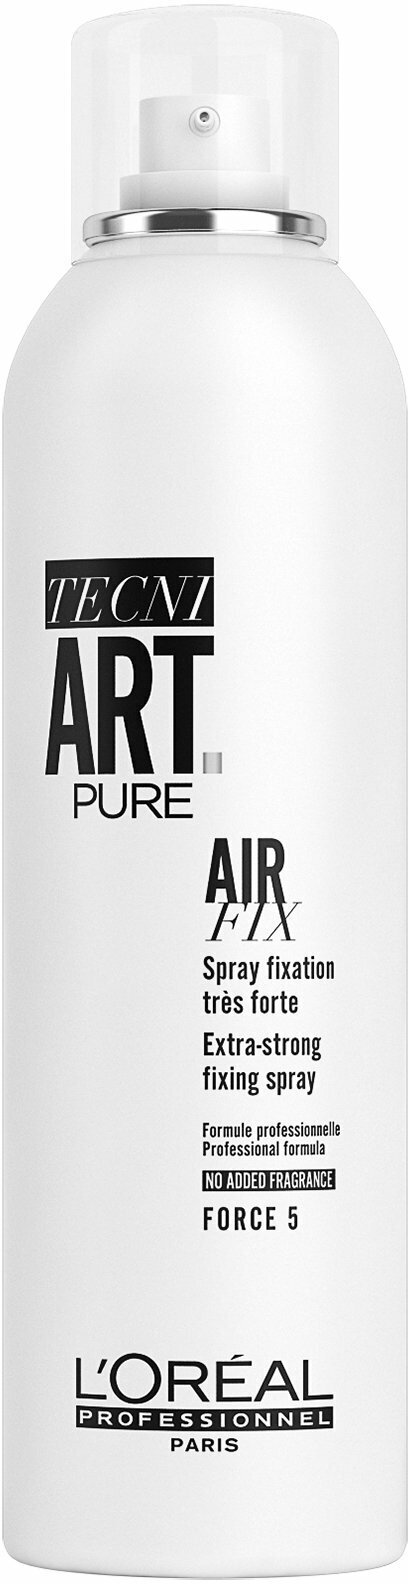 Спрей для волос сильной фиксации с защитой от влаги и УФ-лучей L'Oreal Professionnel Tecni. Art Pure Air Fix Extra-Strong Fixing Spray /400 мл/гр.